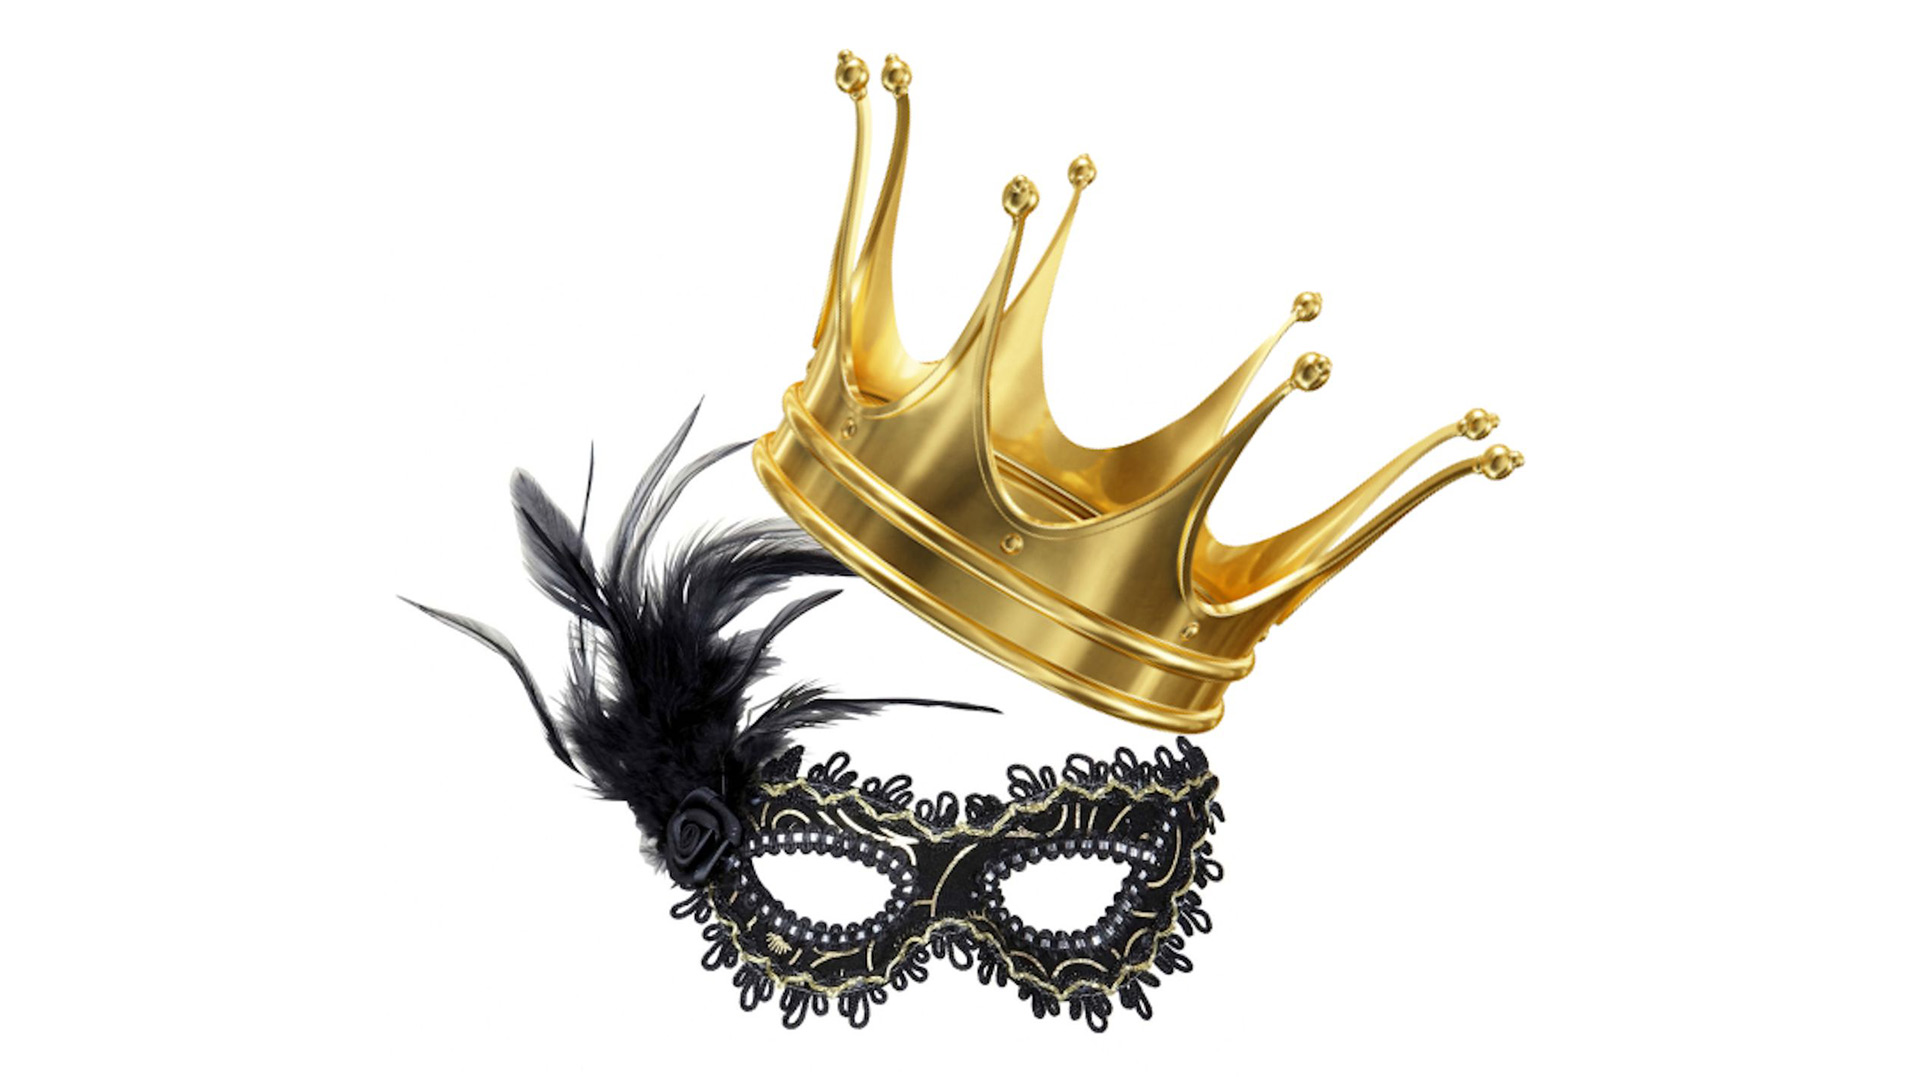 Agenda MUSICA OLOT Playback dels reis i reines dels Carnavals d´Olot a Olot